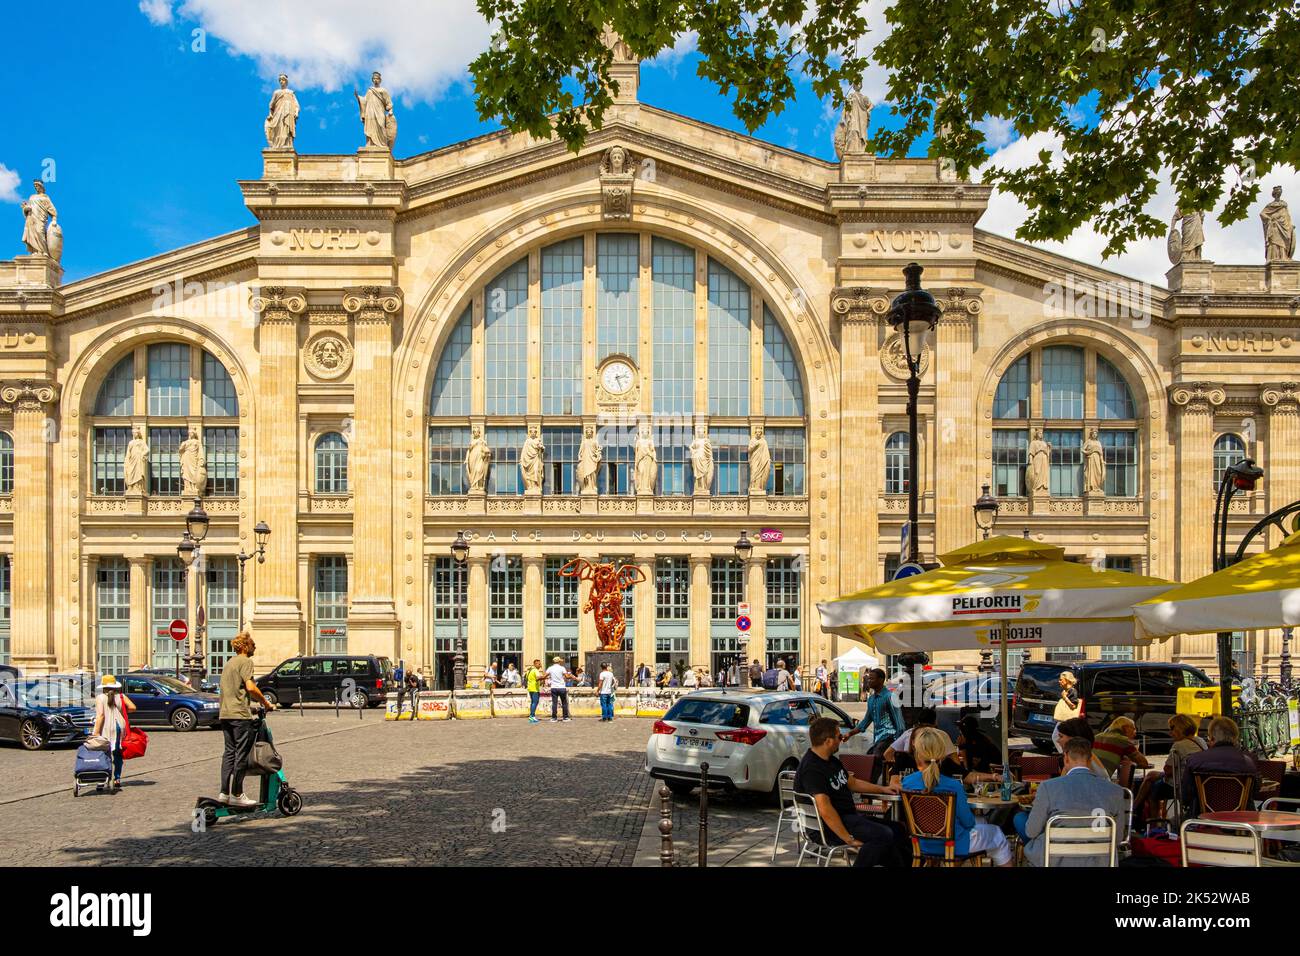 France, Paris, Gare du Nord Stock Photo